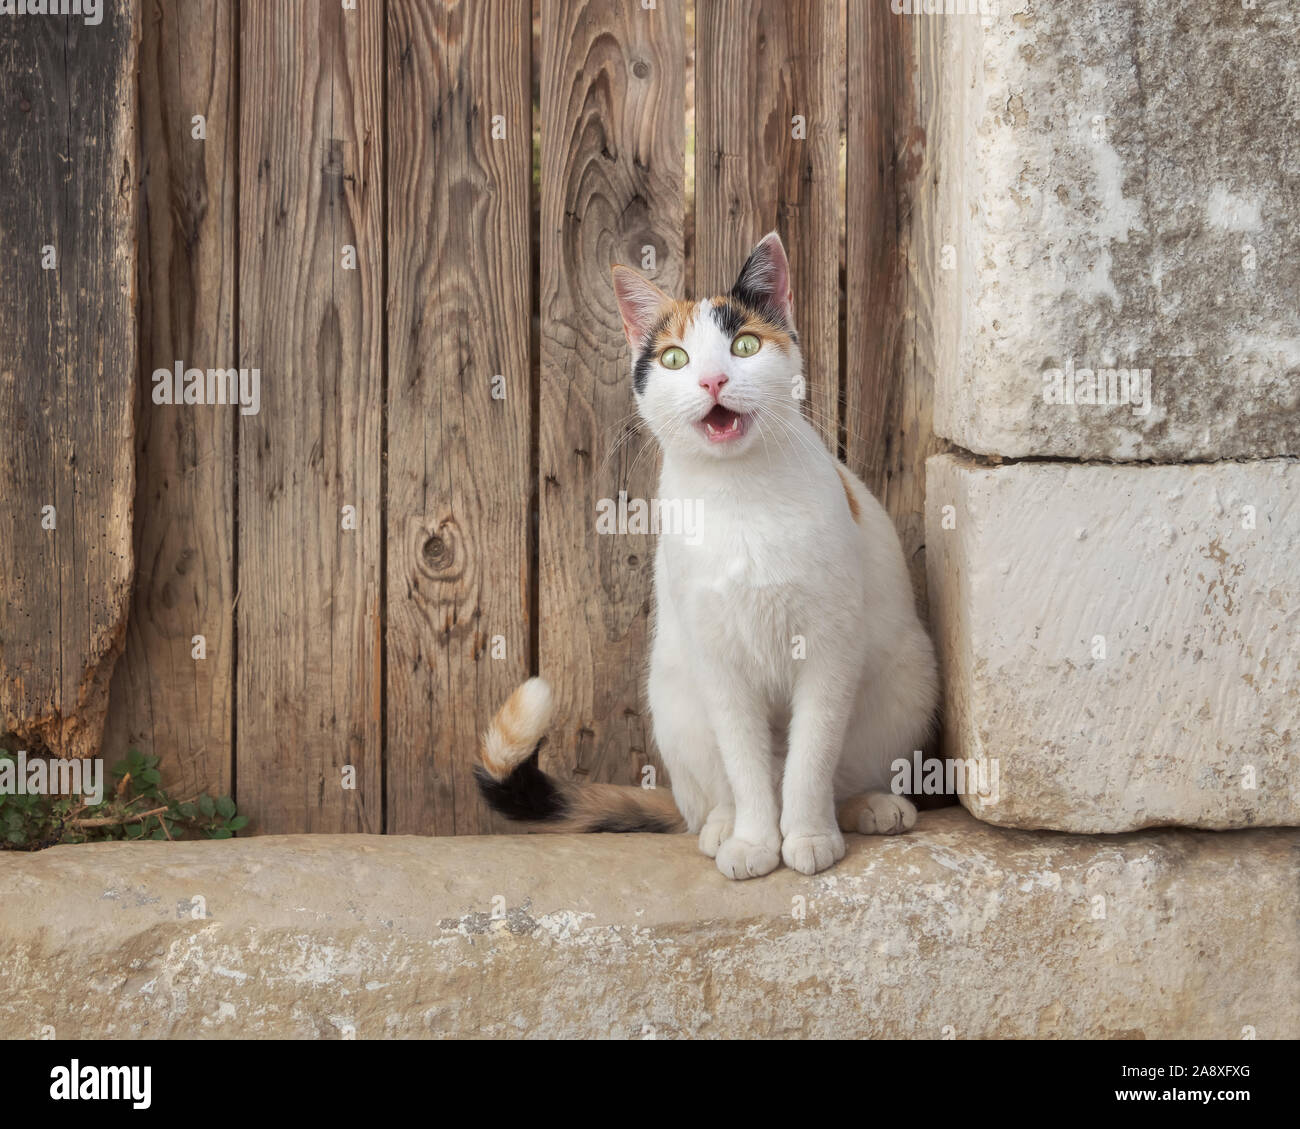 Chat drôle à la recherche d'une expression étonnée assis devant une vieille porte en bois, le blanc avec des motifs de couleur calico kitty est complètement étonné Banque D'Images